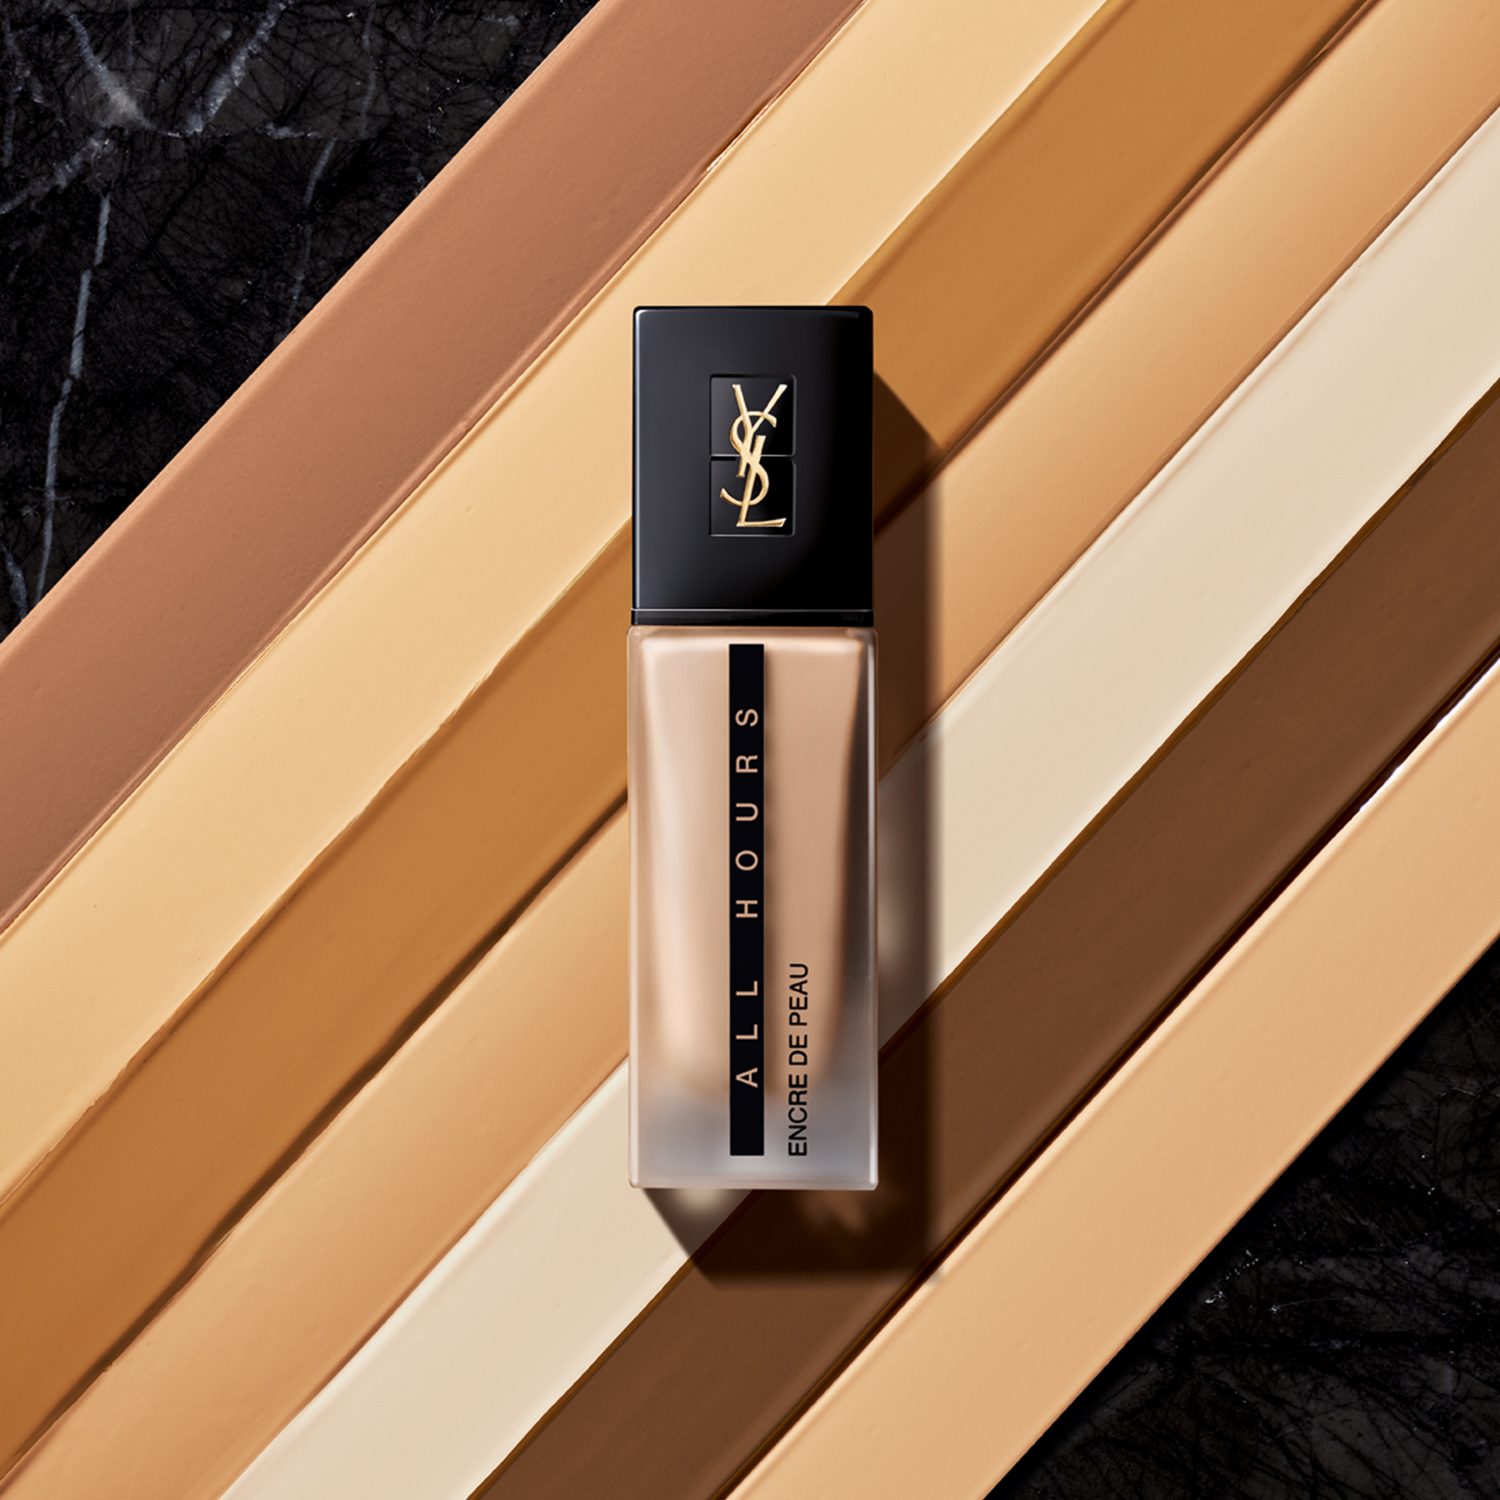 Bases de Maquillaje · Yves Saint Laurent · Perfumería · El Corte